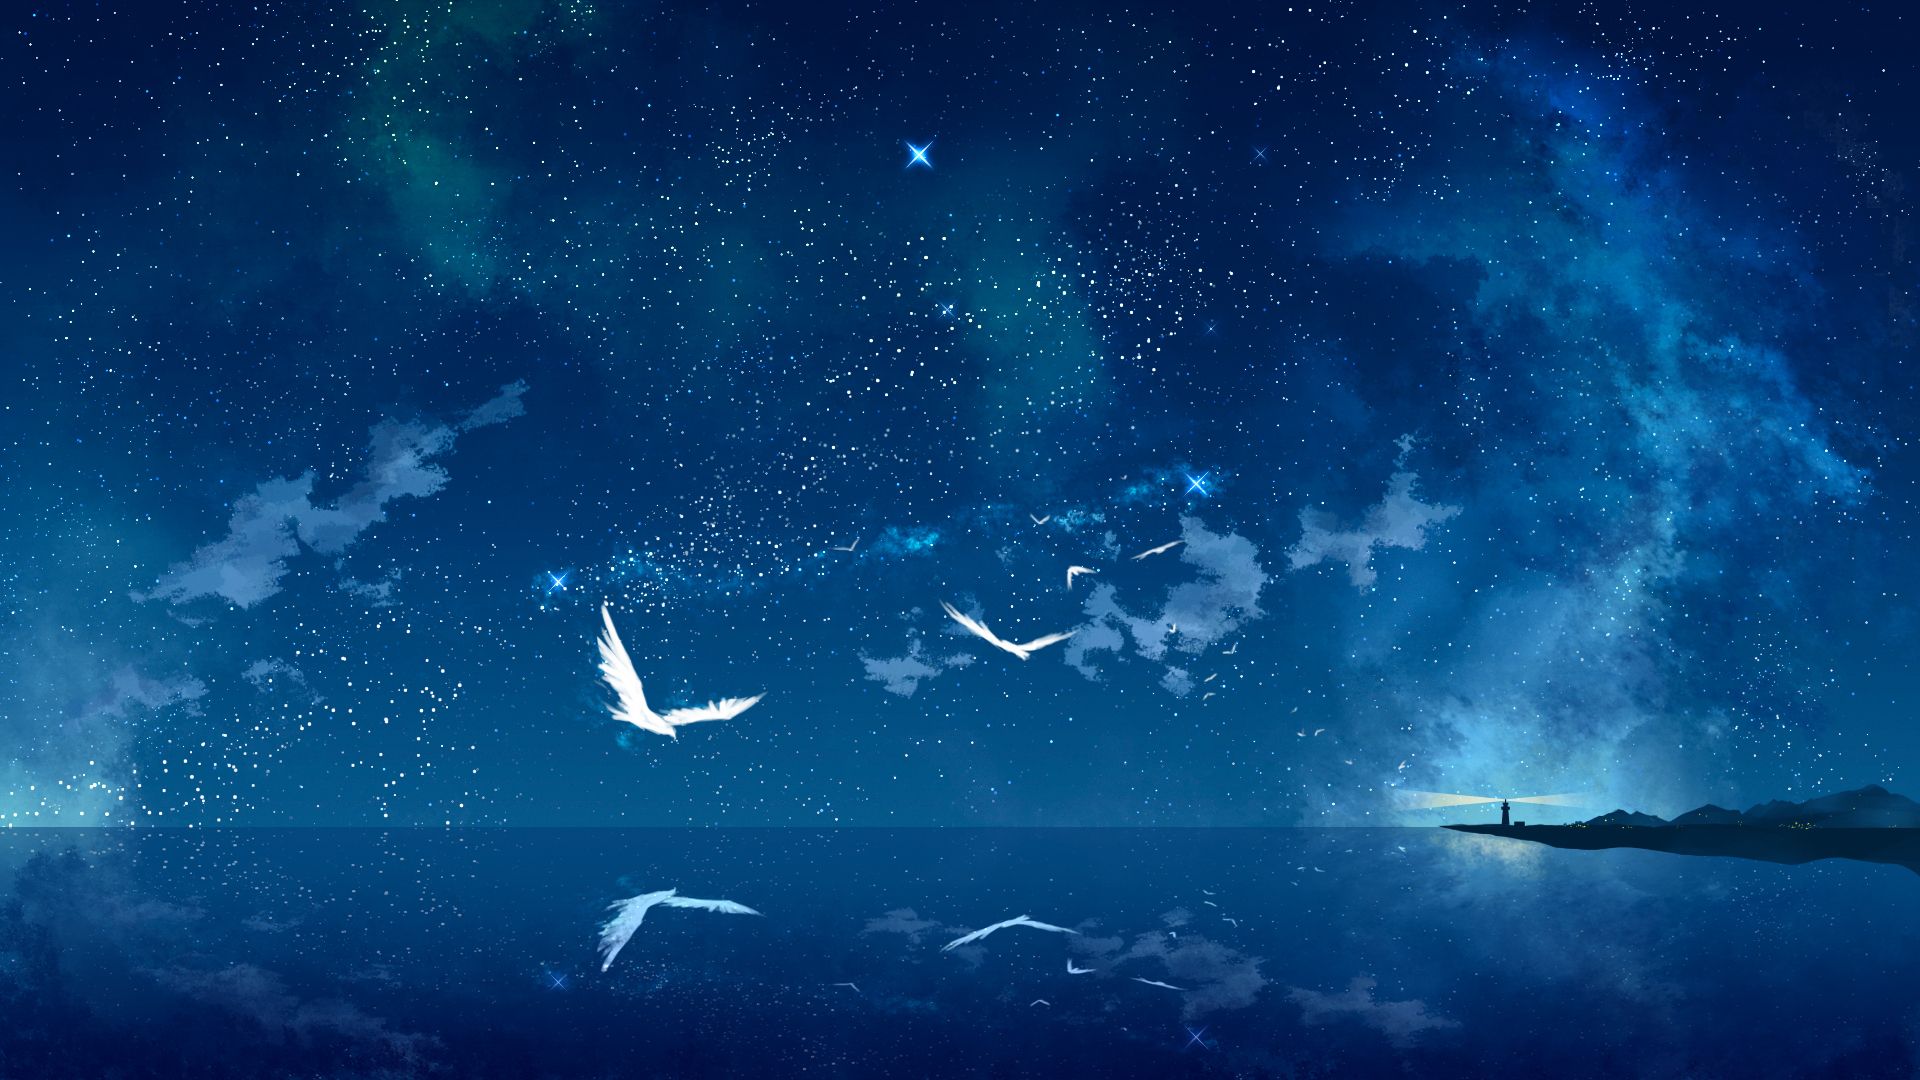 Xả Ảnh Anime Đẹp Hiếm   Ảnh Bầu trời GALAXY đẹp nhất   Wattpad